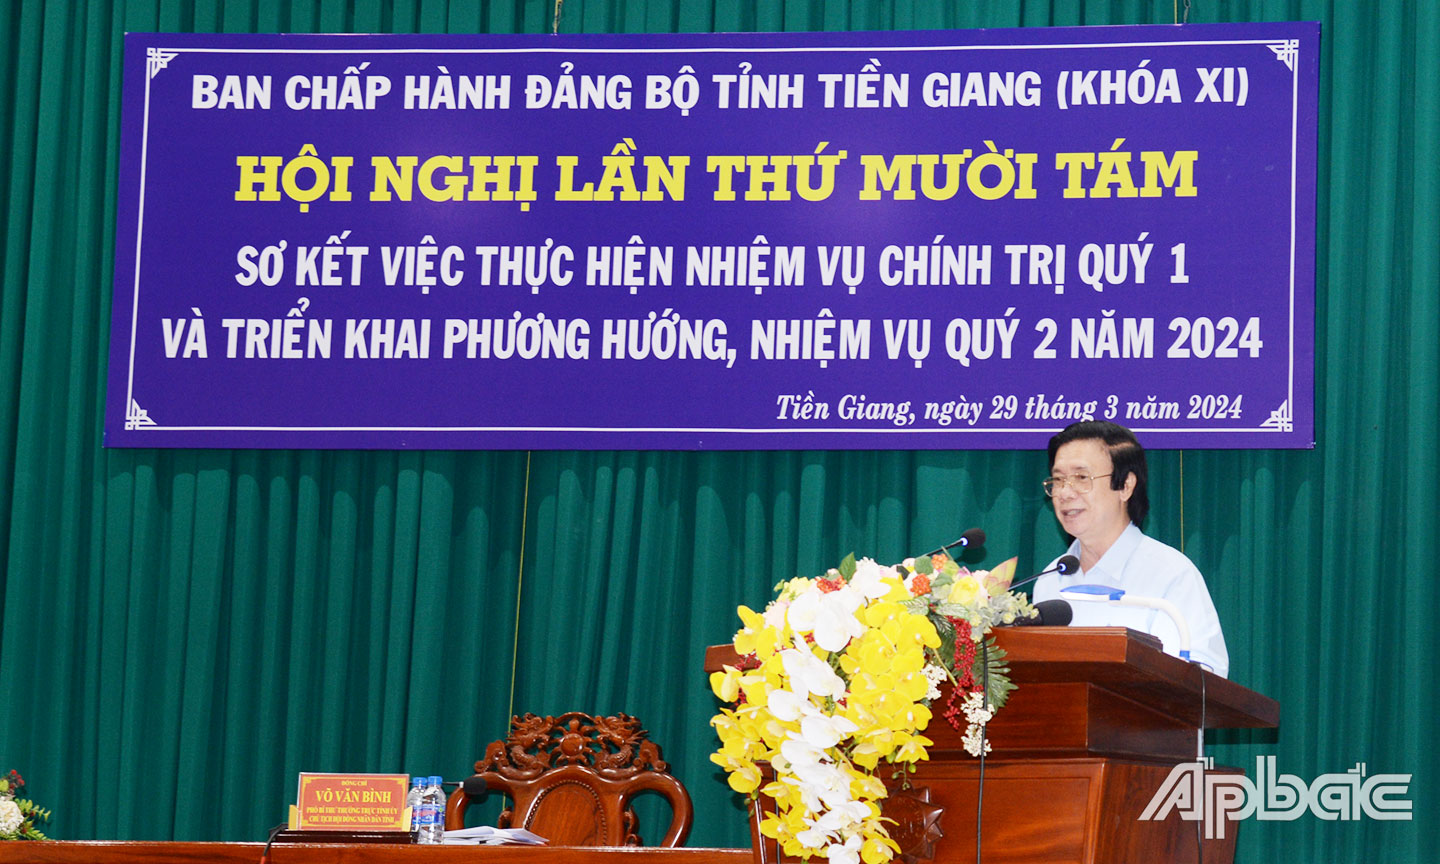 Đồng chí Nguyễn Văn Danh chỉ đạo những nhiệm vụ trọng tâm cần thực hiện trong quý II năm 2024.